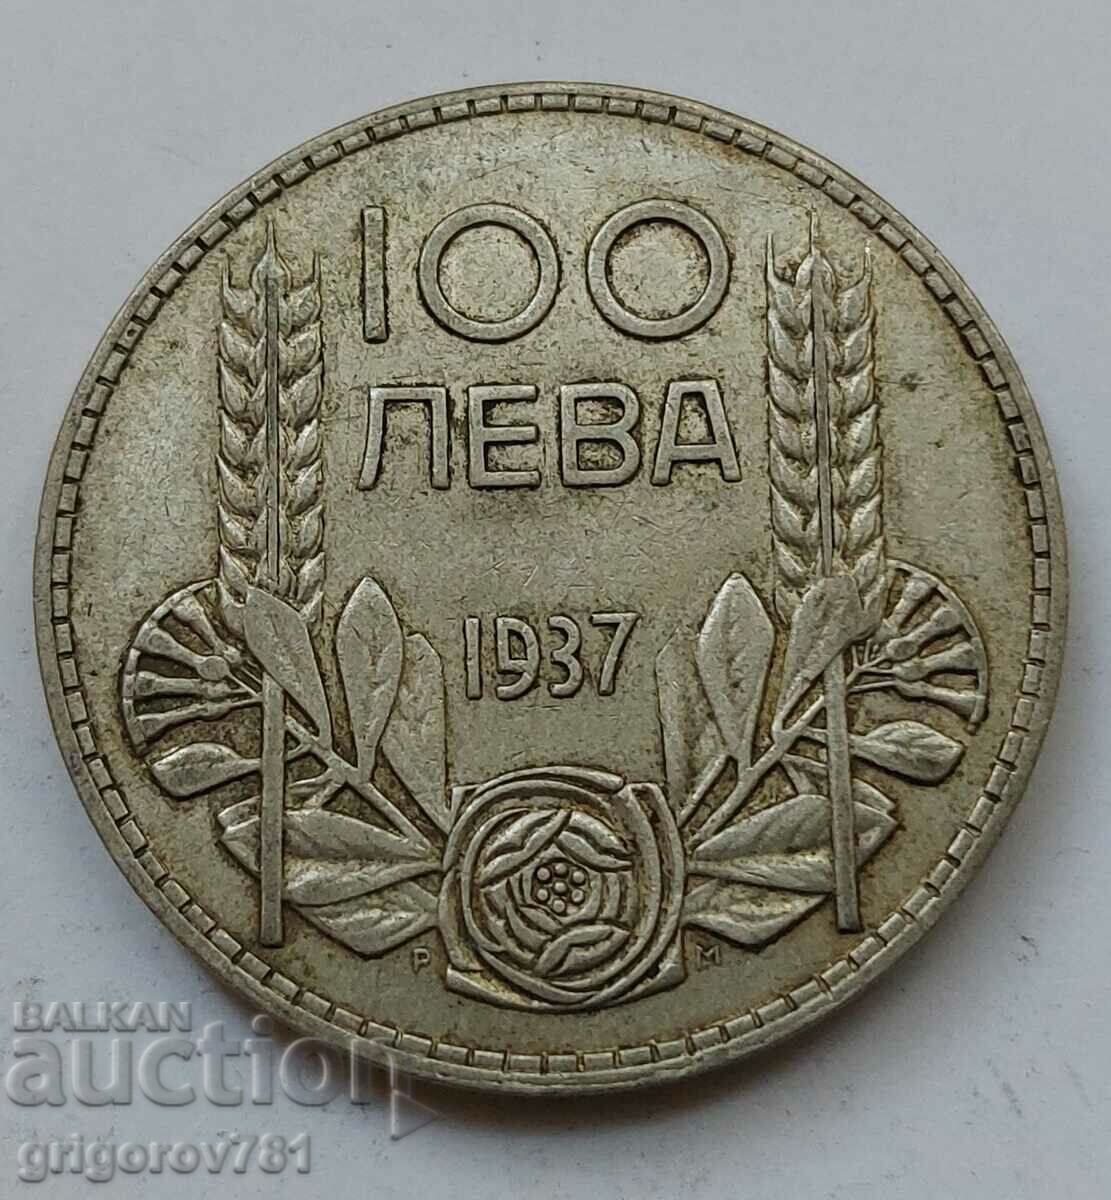 Ασήμι 100 λέβα Βουλγαρία 1937 - ασημένιο νόμισμα #79